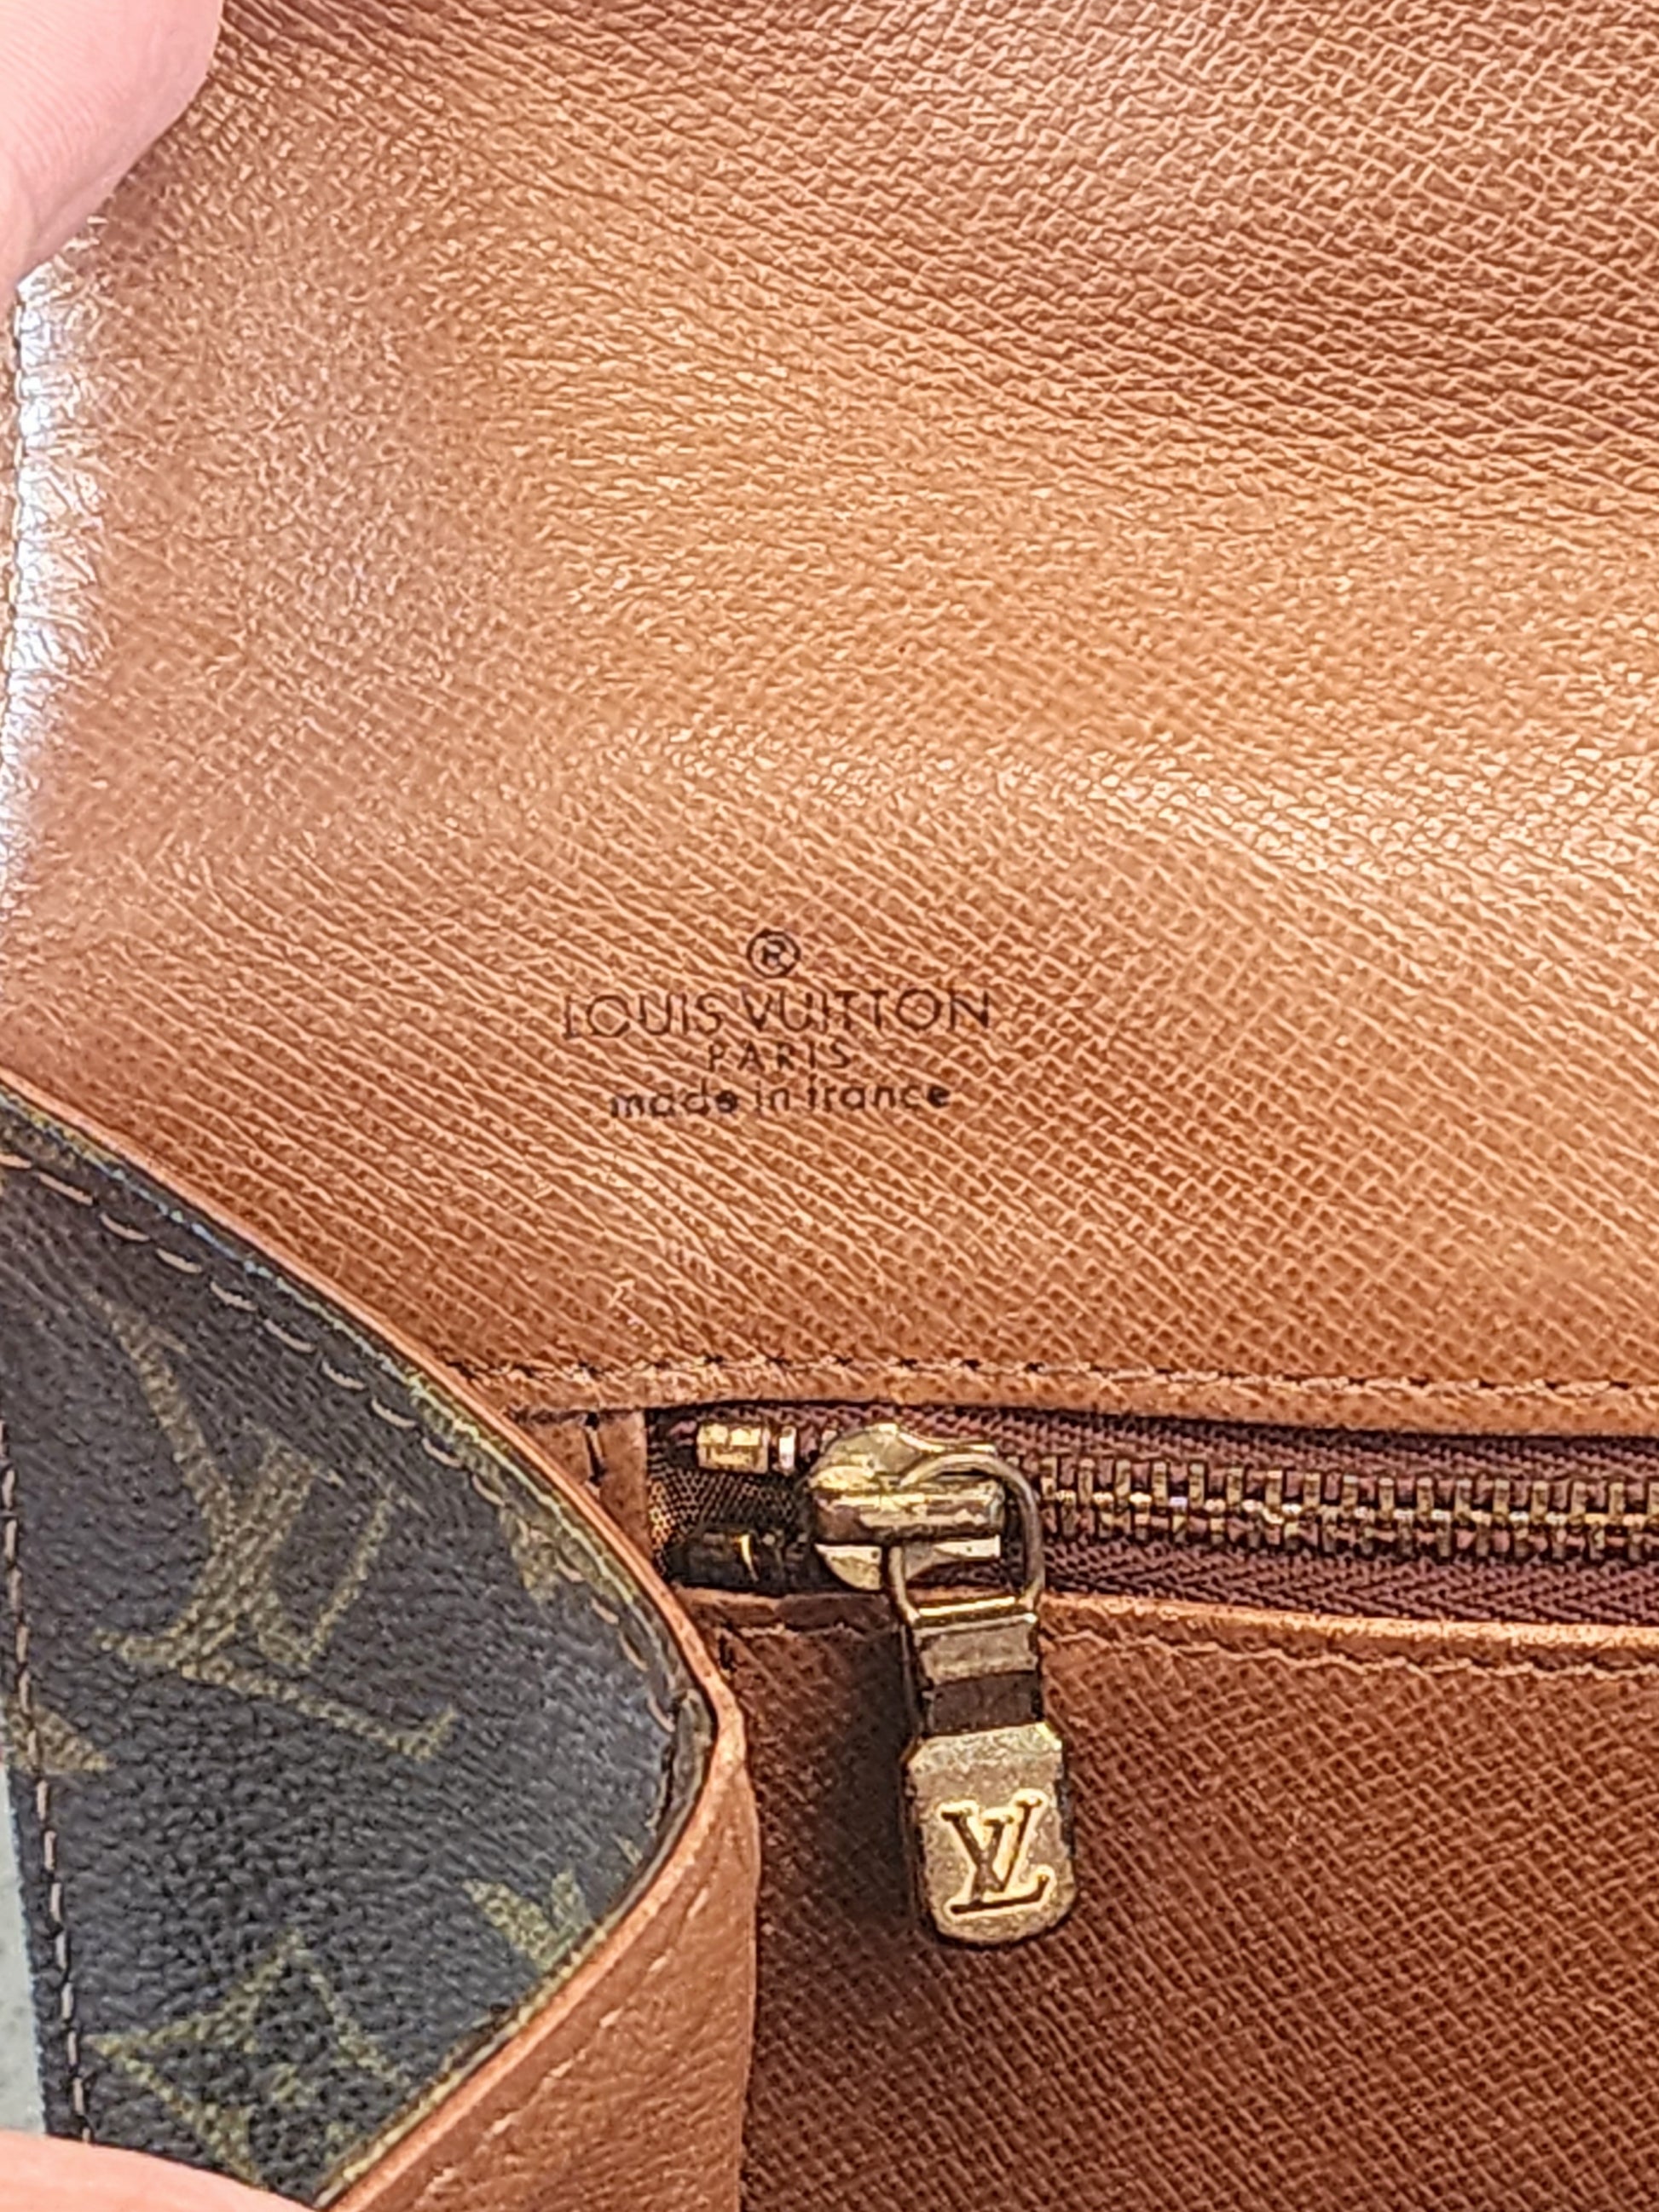 Authentic Louis Vuitton Pochette Dame Monogram Clutch Bag #15252